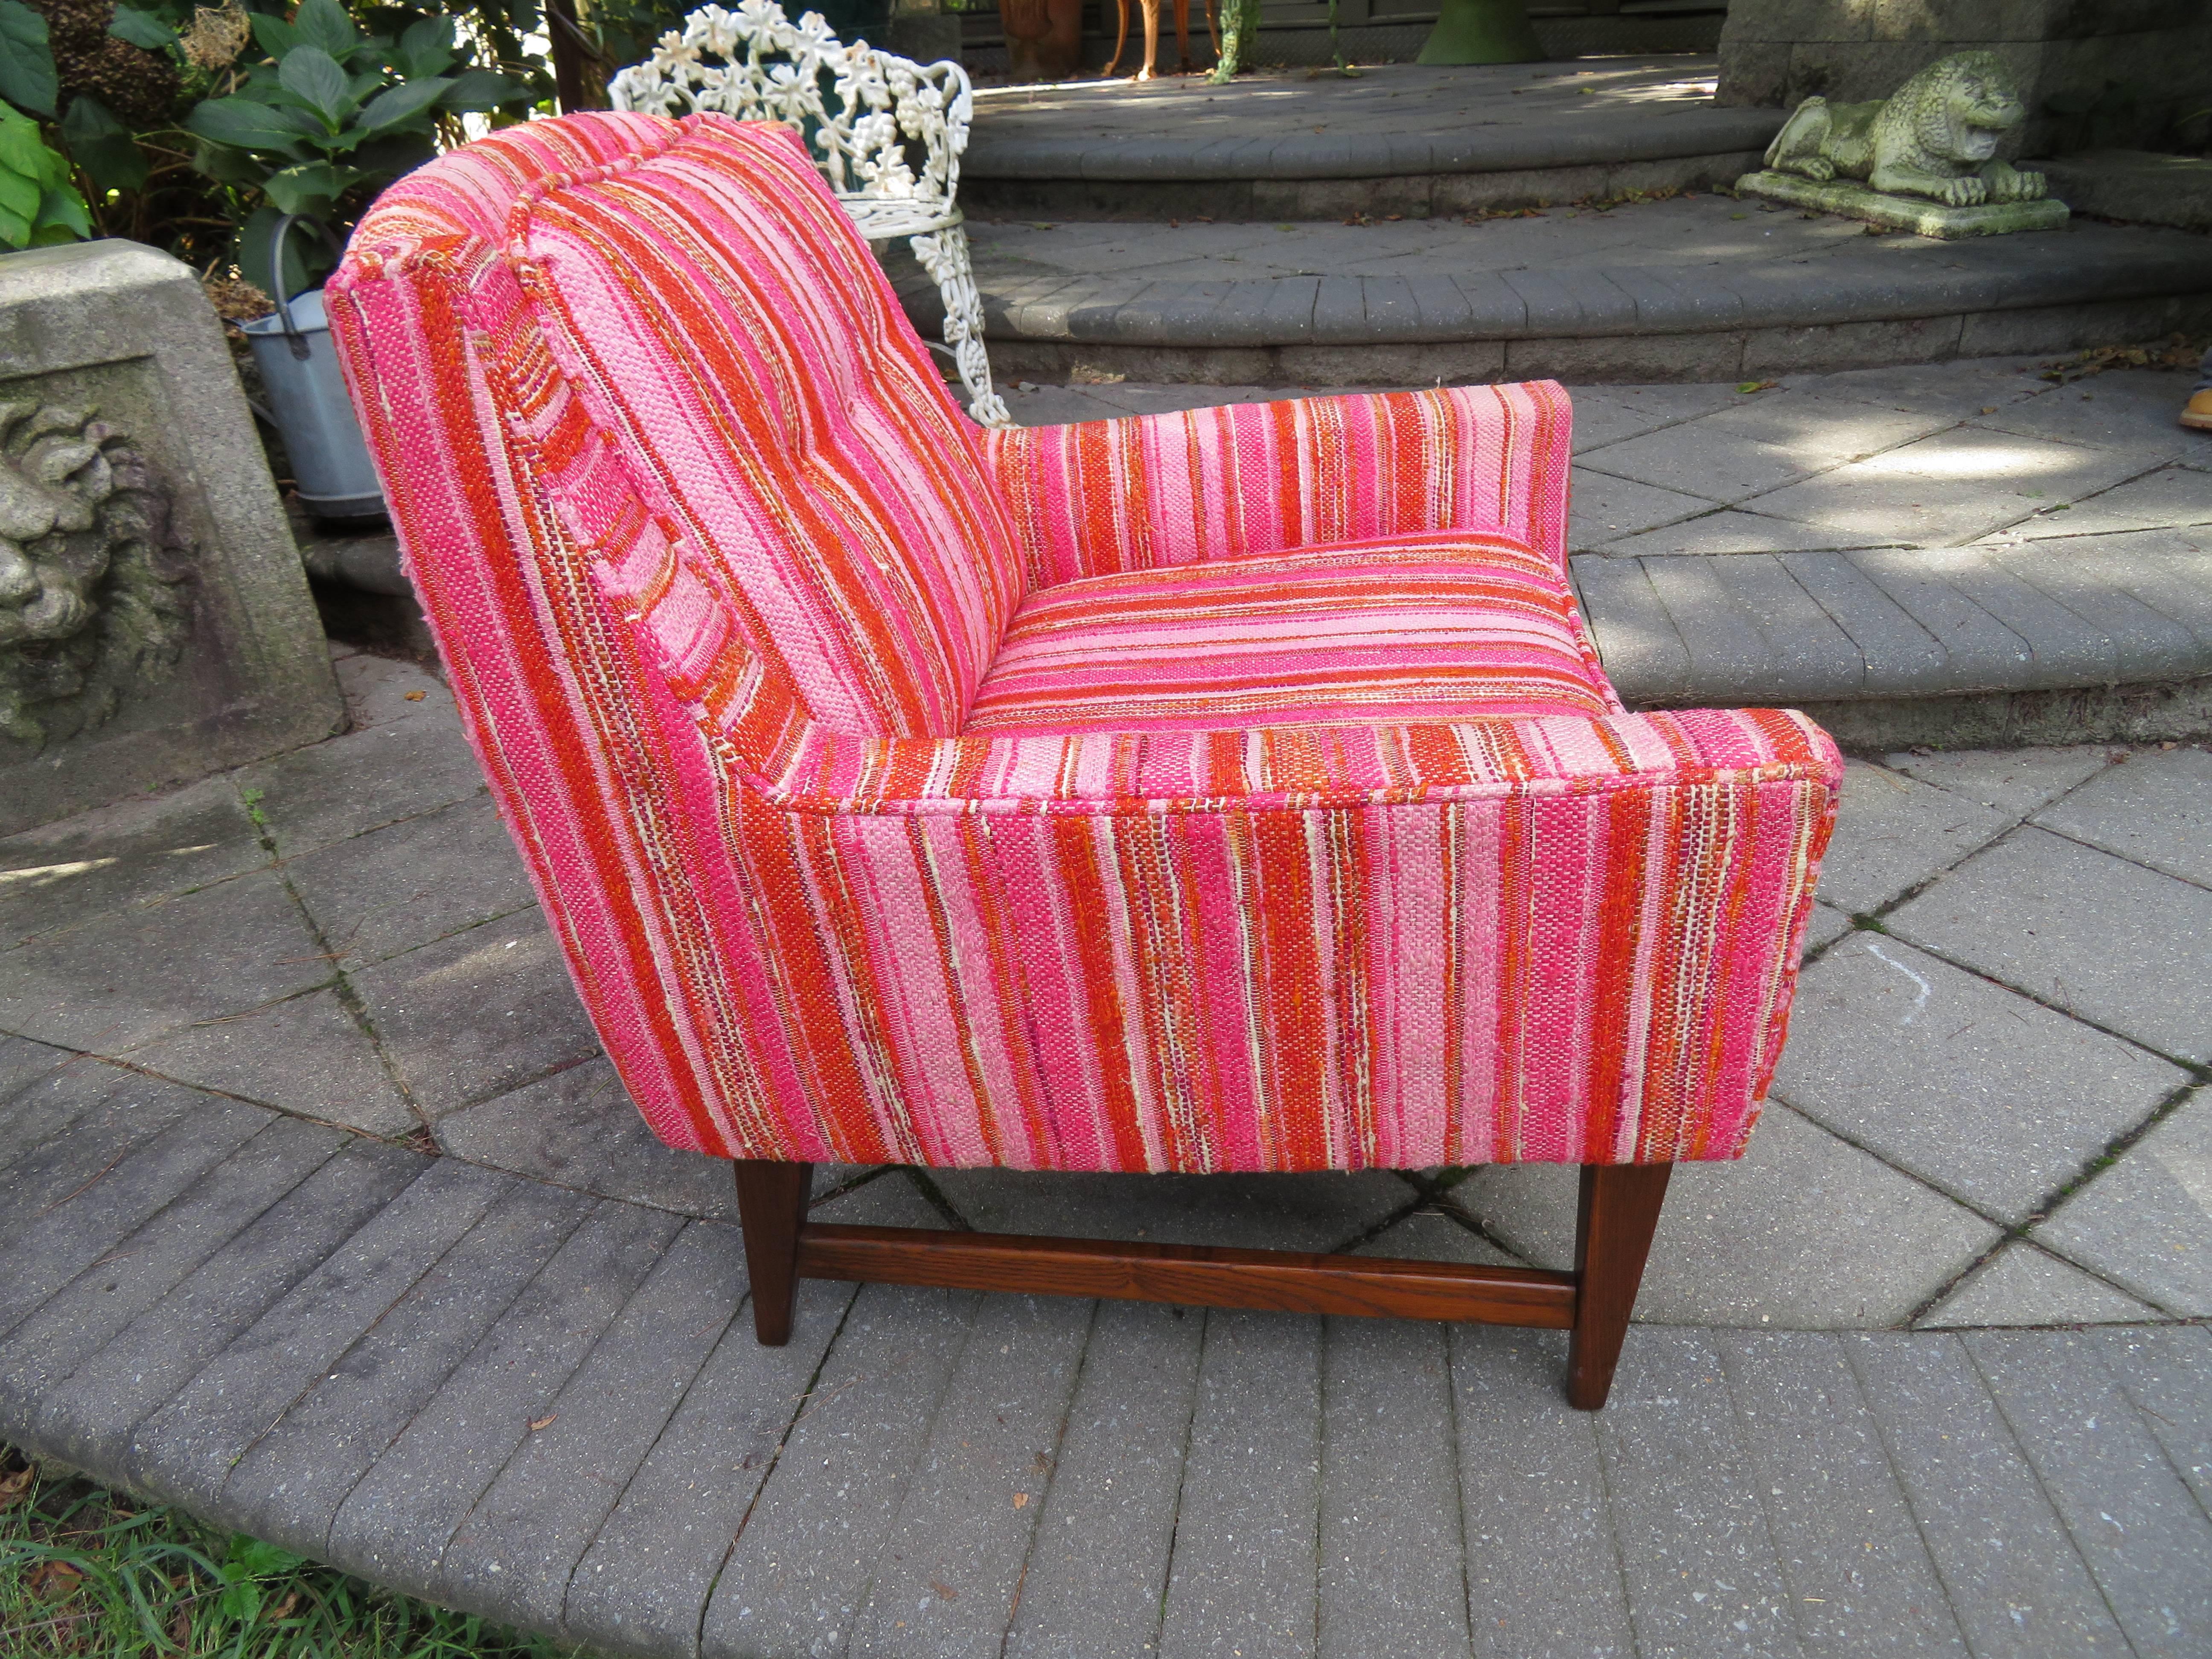 Jolie paire de chaises longues en noyer, de style moderne du milieu du siècle, par Selig. Cette paire a conservé son tissu nubby rayé rose et rouge d'origine en bon état d'usage, nous recommandons de le retapisser.